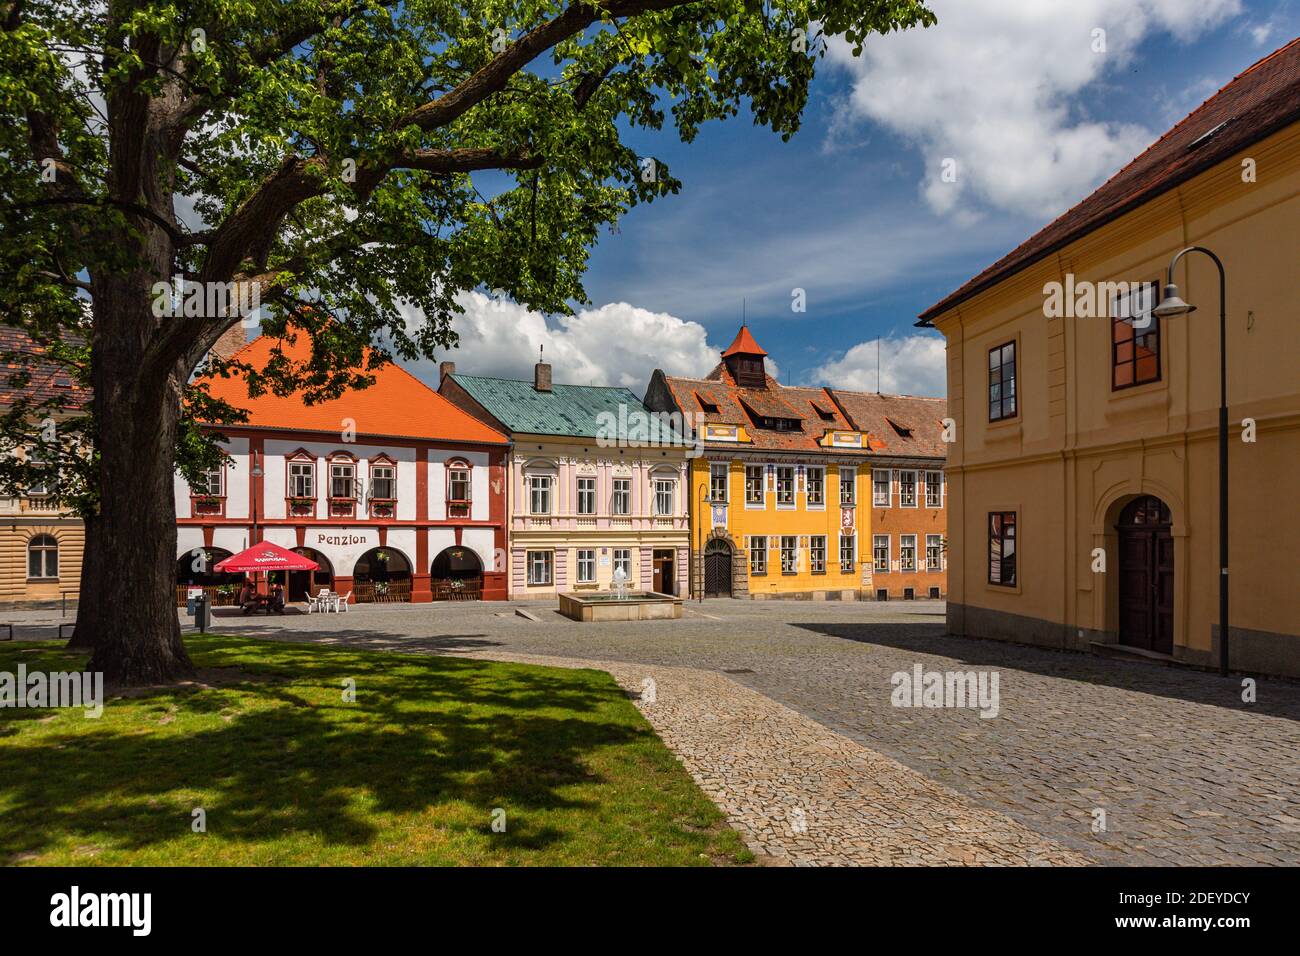 Opocno, Tschechische Republik - Juni 16 2020: Blick auf den Trckovo Platz mit Kopfsteinpflasterstraße, bunten Häusern, einem Brunnen, einem Baum und einer grünen Wiese. Stockfoto